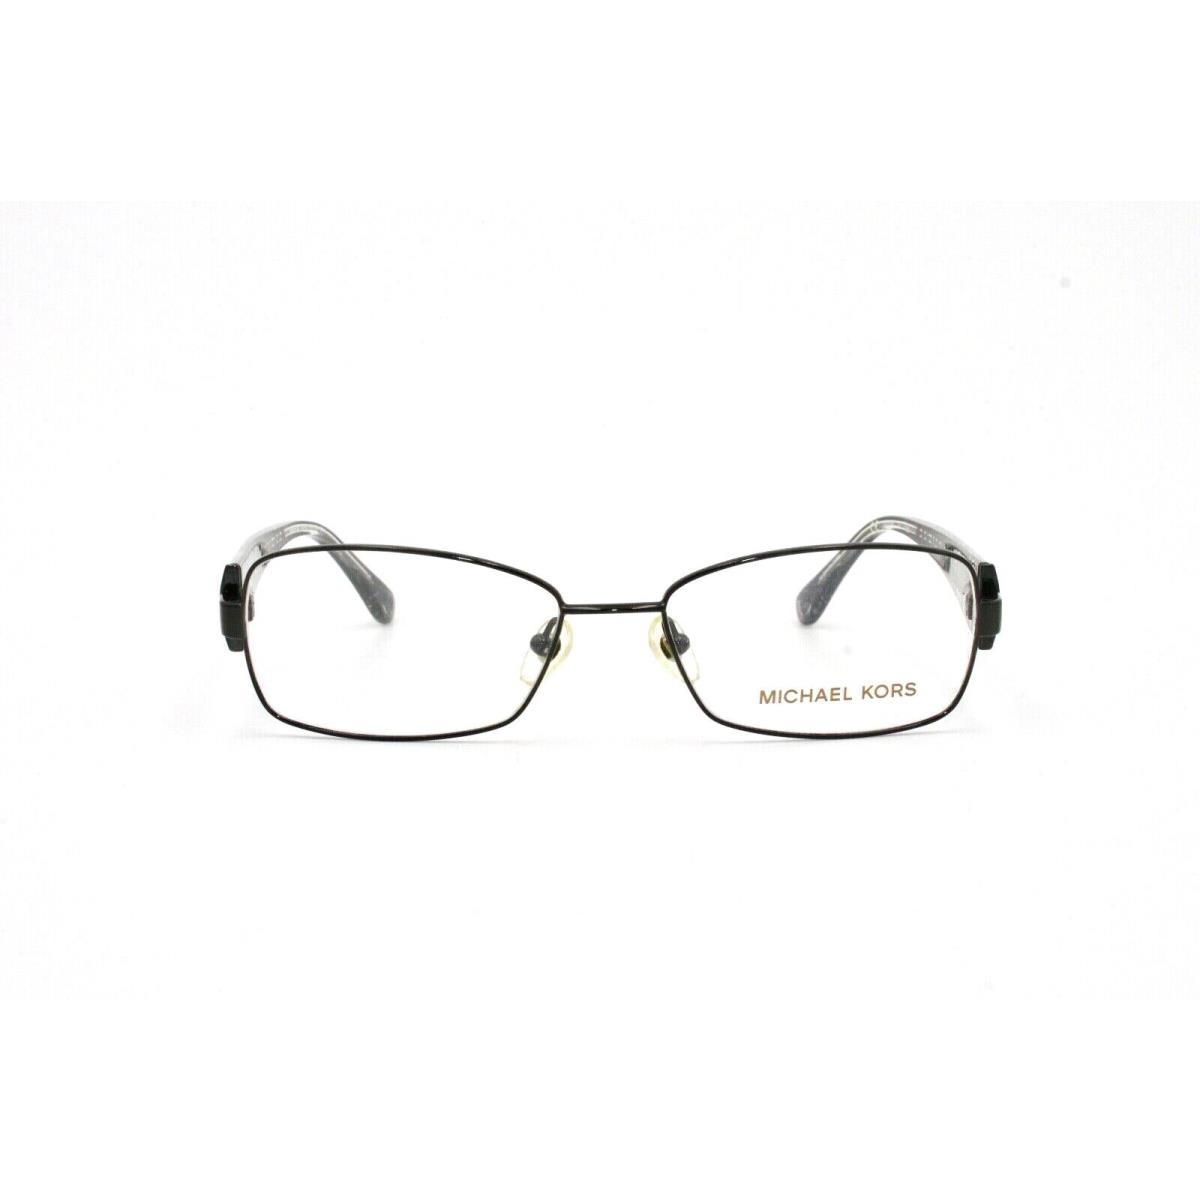 Michael Kors Eyeglass Frame MK499 001 52 16 135